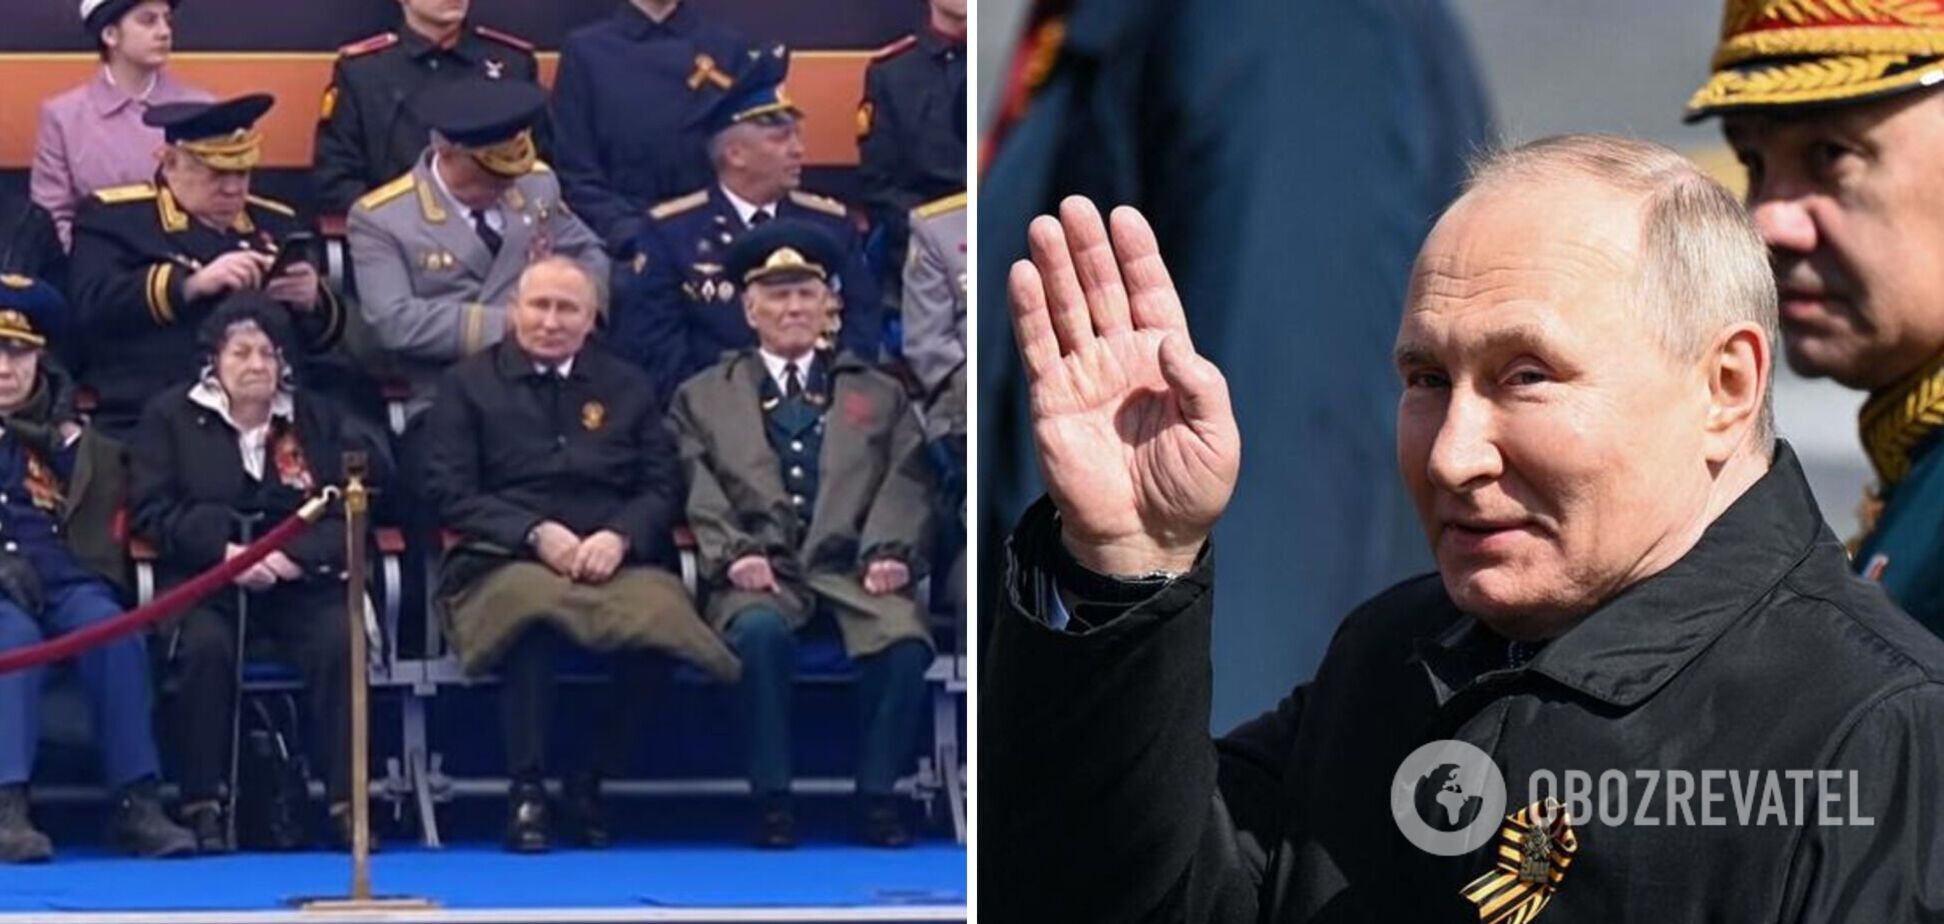 'Було багато сигналів': експертка з мови тіла проаналізувала поведінку Путіна 9 травня